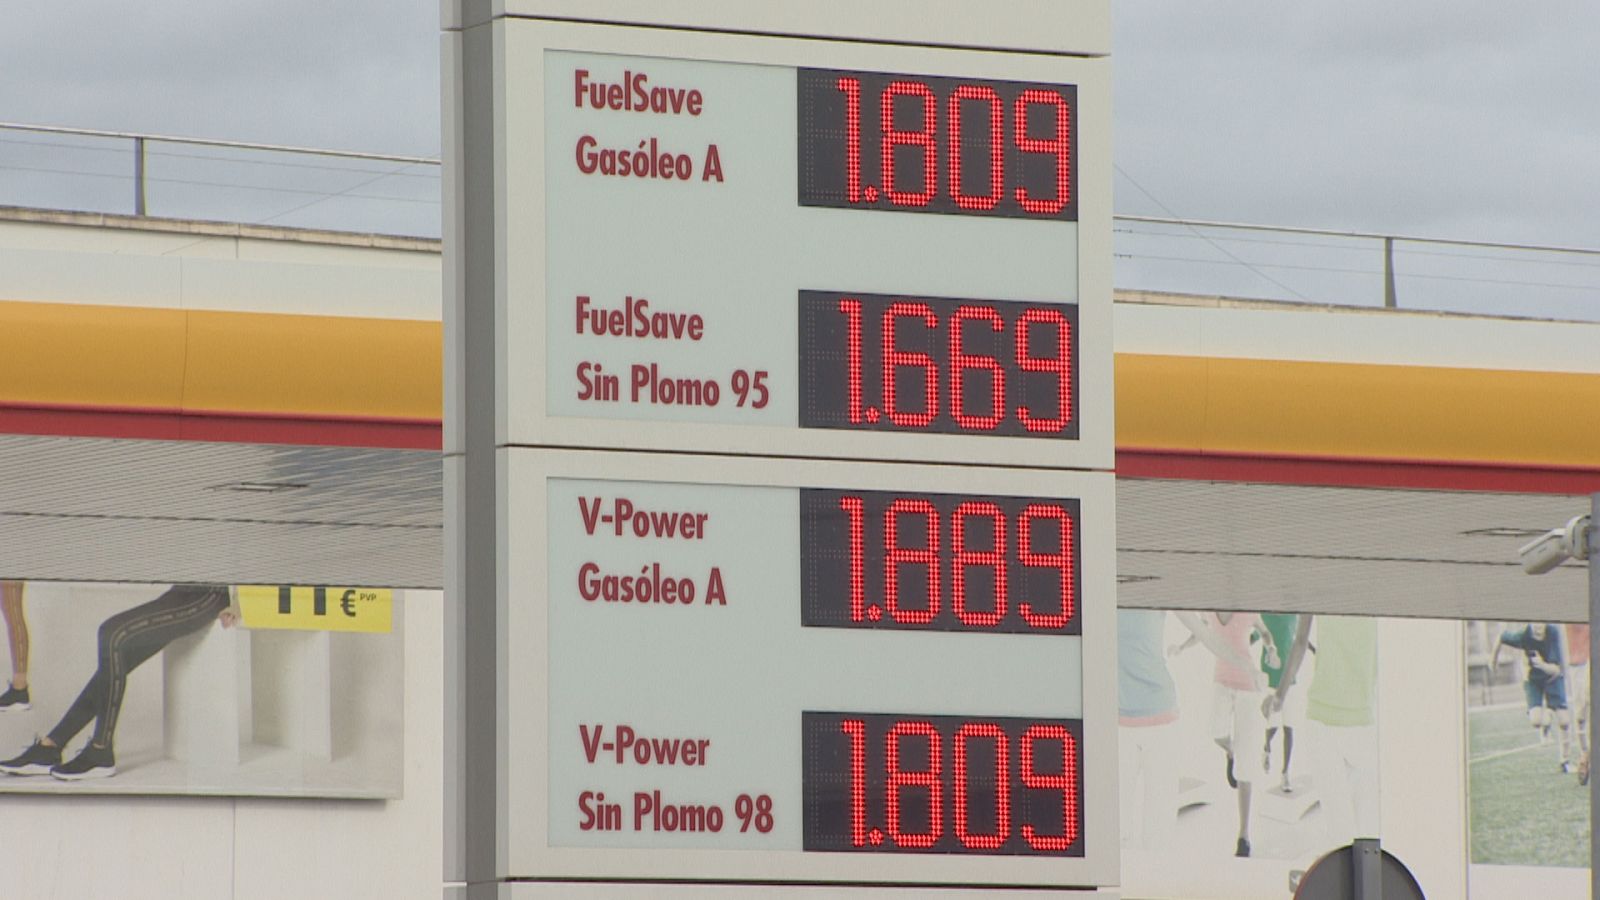 Panell amb els preus d'una benzinera a Palma